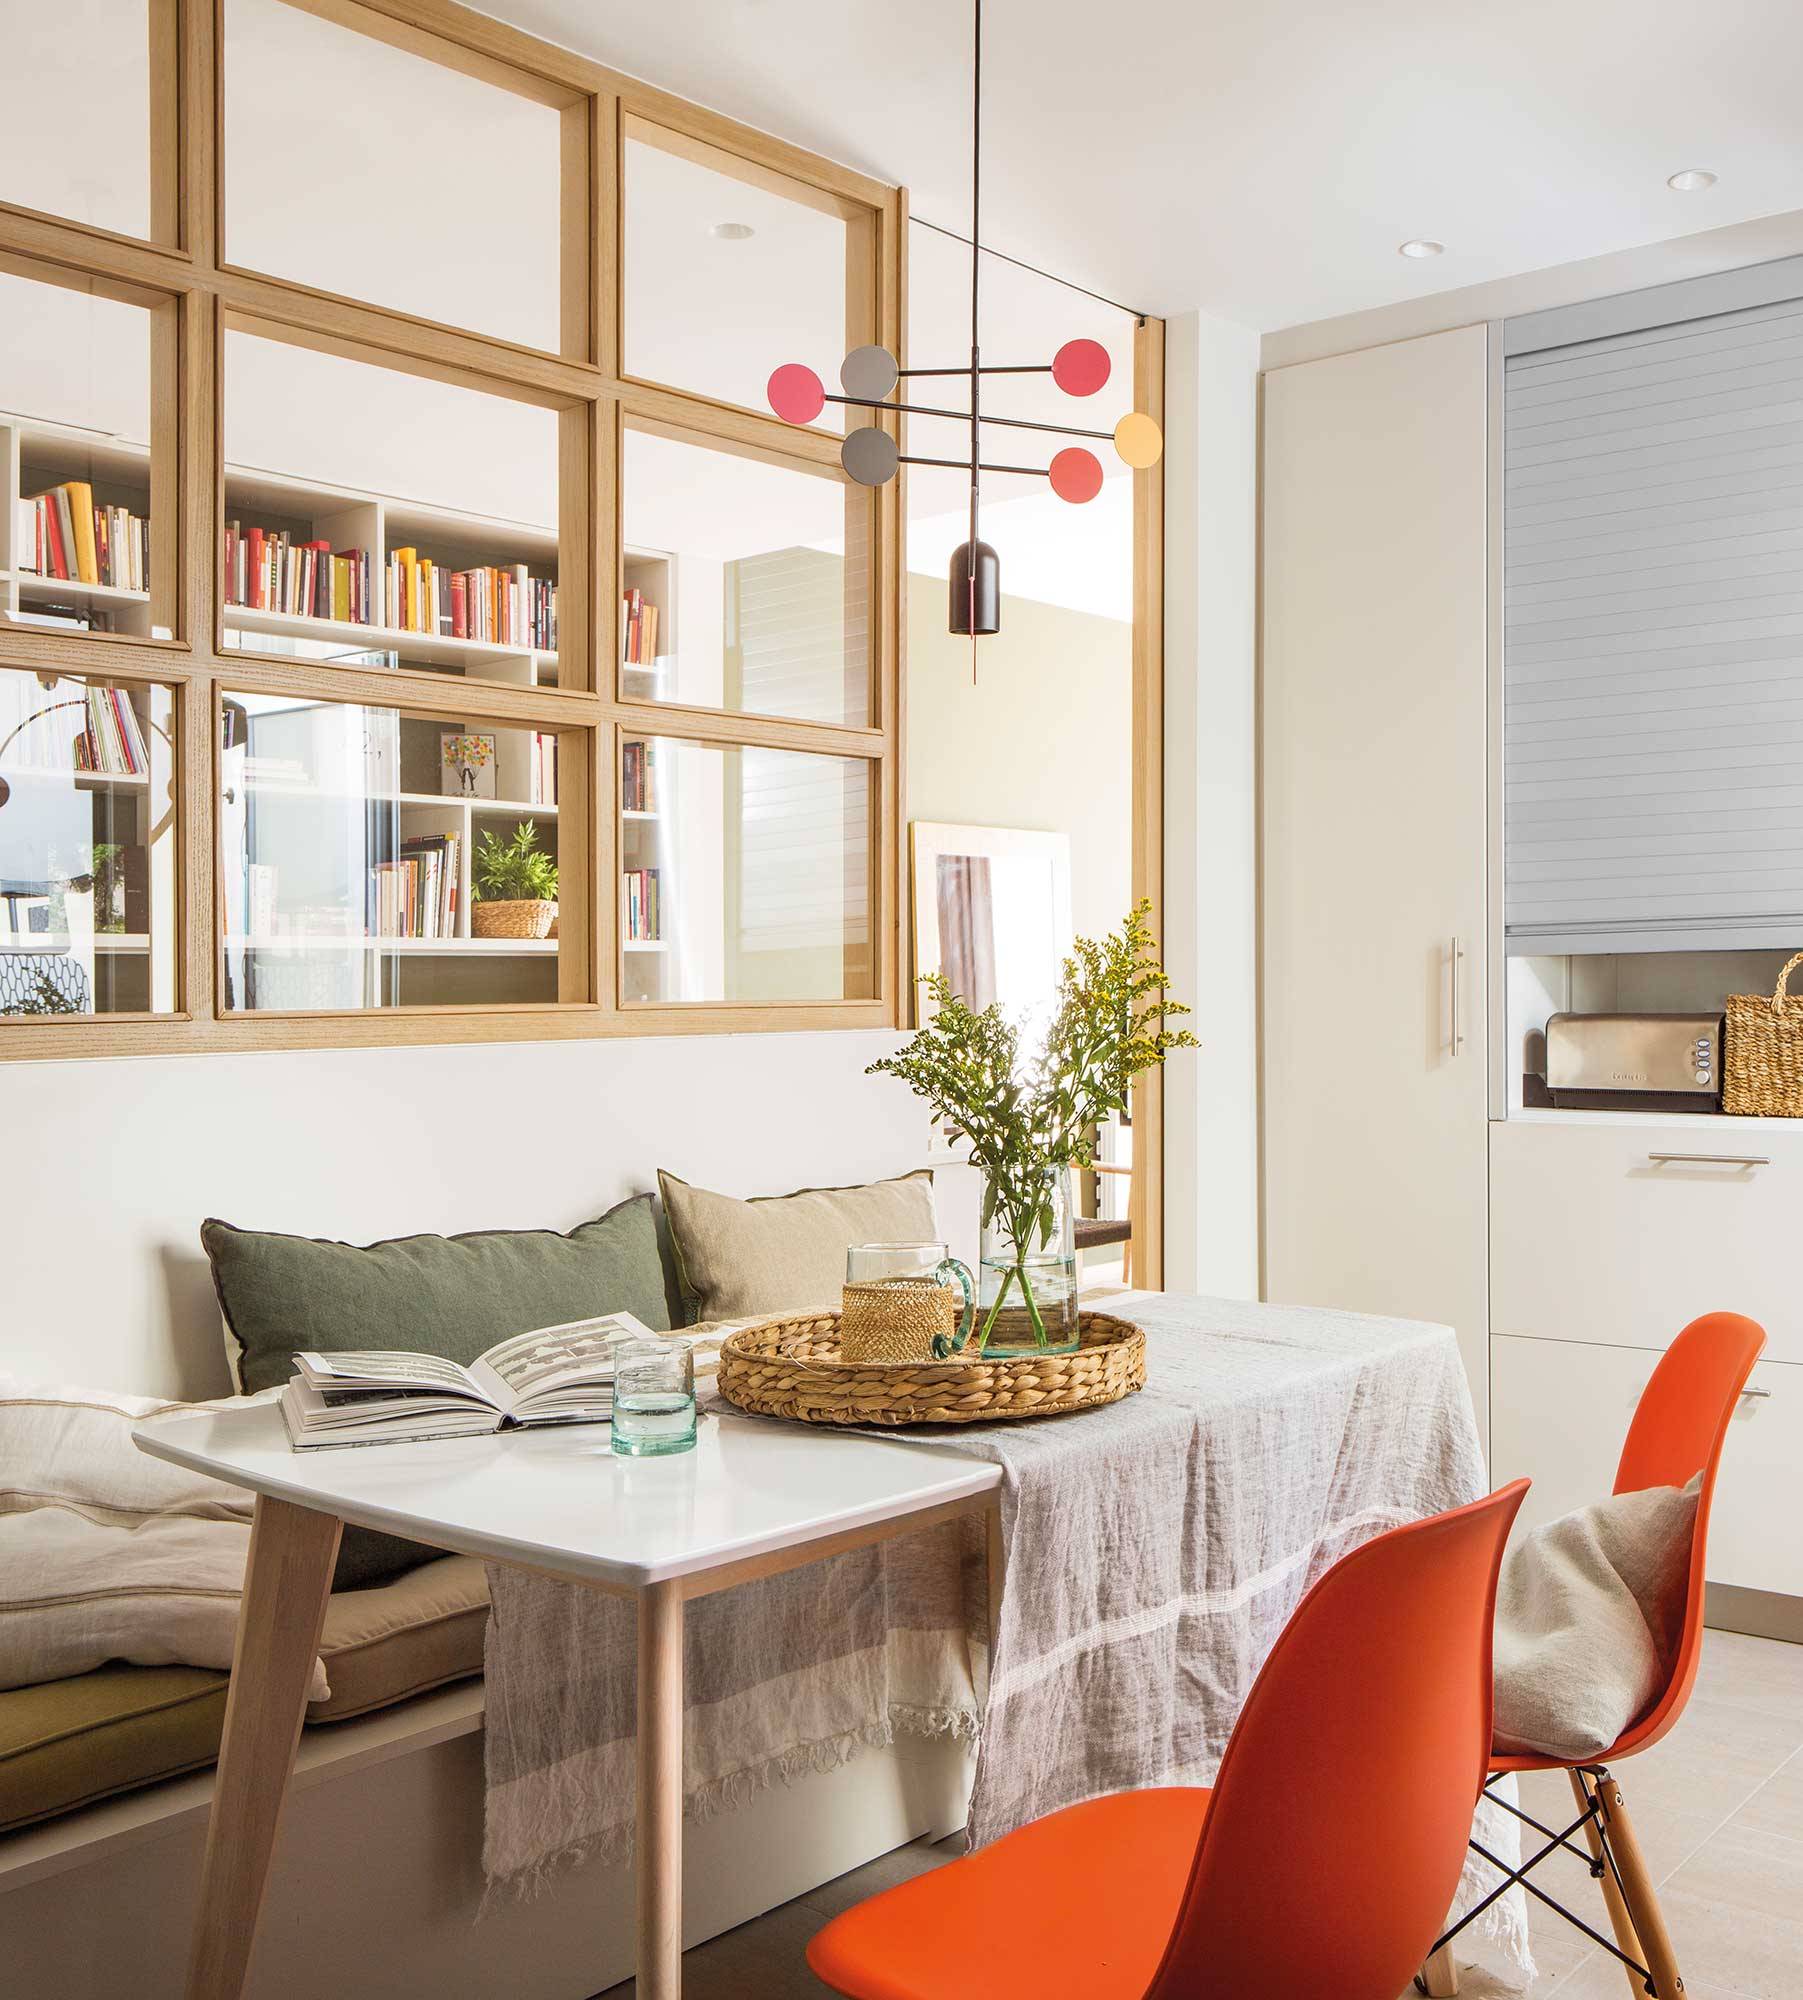 Office pequeño en cocina con cristalera de madera que comunica con el pasillo 00503819